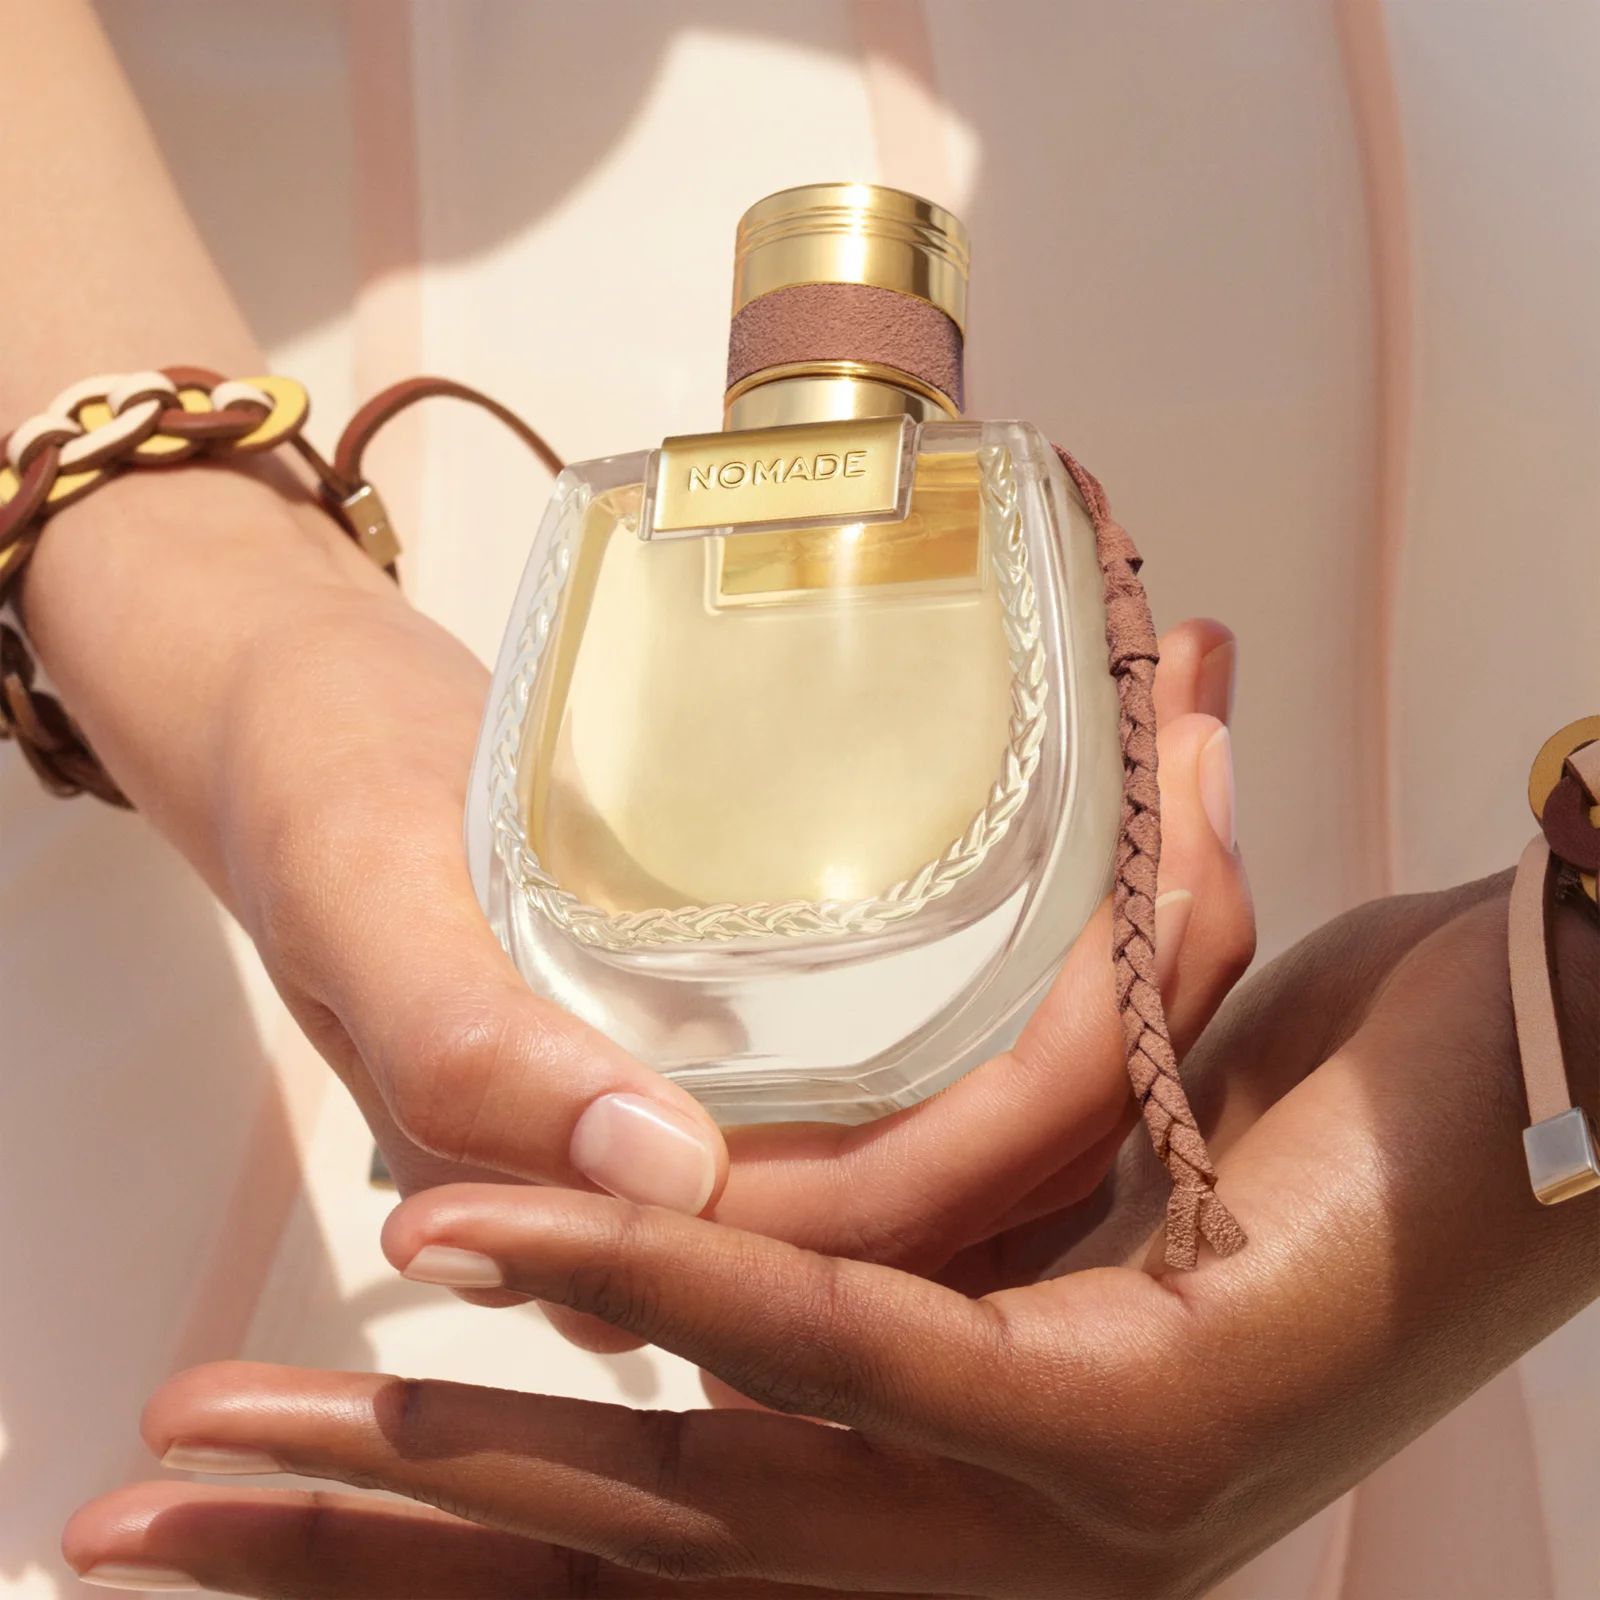 Nomade Jasmin Naturel Intense Chloé Perfumy To Nowe Perfumy Dla